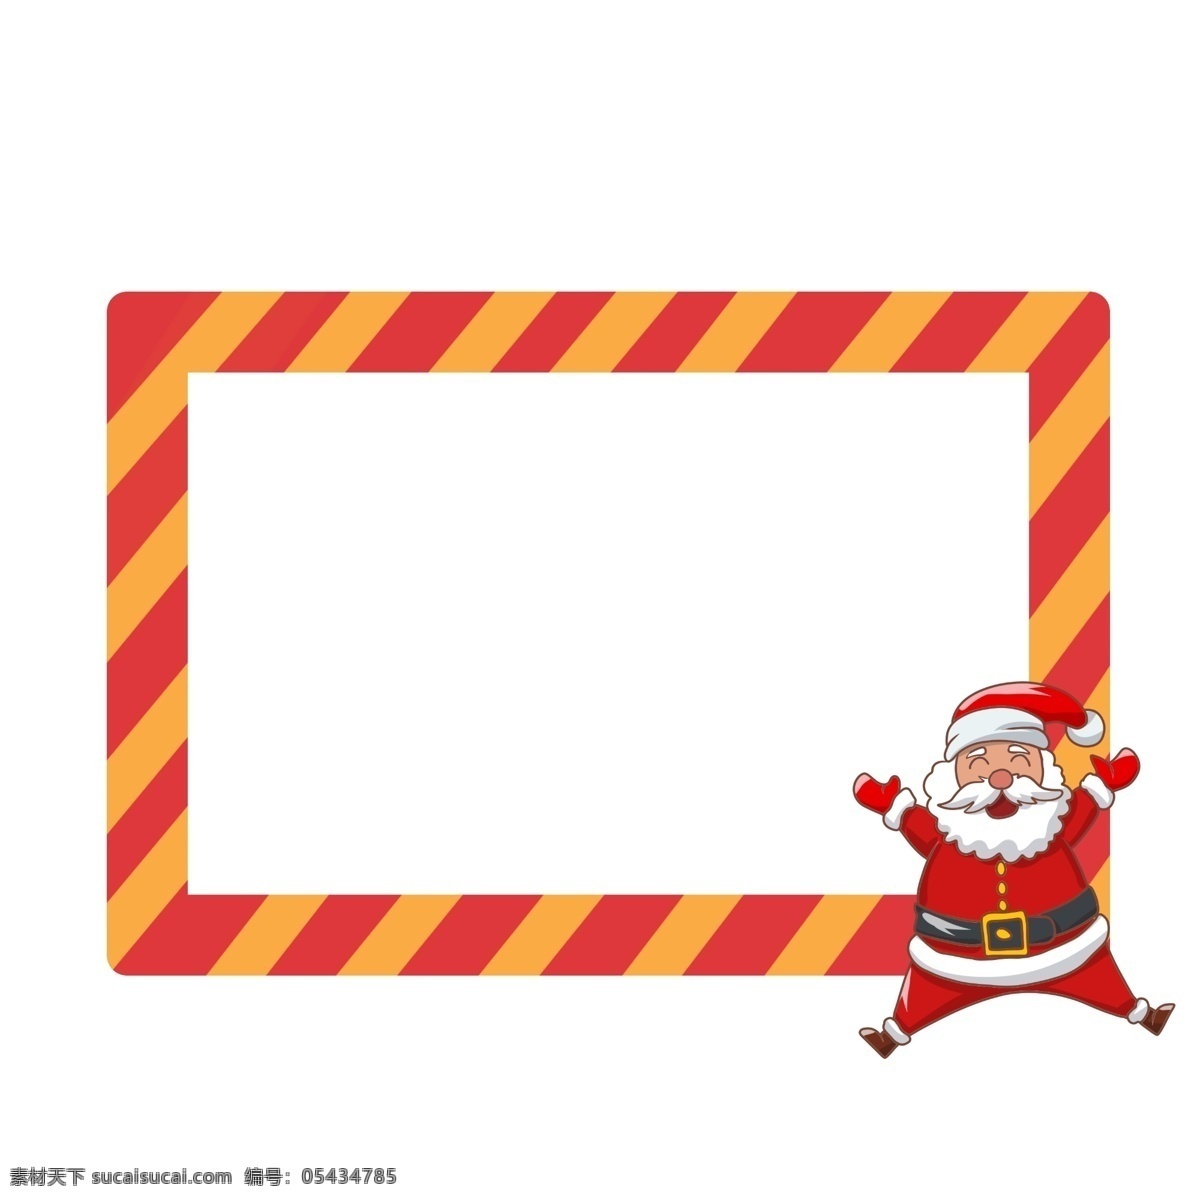 圣诞节 长方形 边框 手绘 红色的圣诞帽 圣诞老人边框 漂亮的边框 边框装饰 边框插画